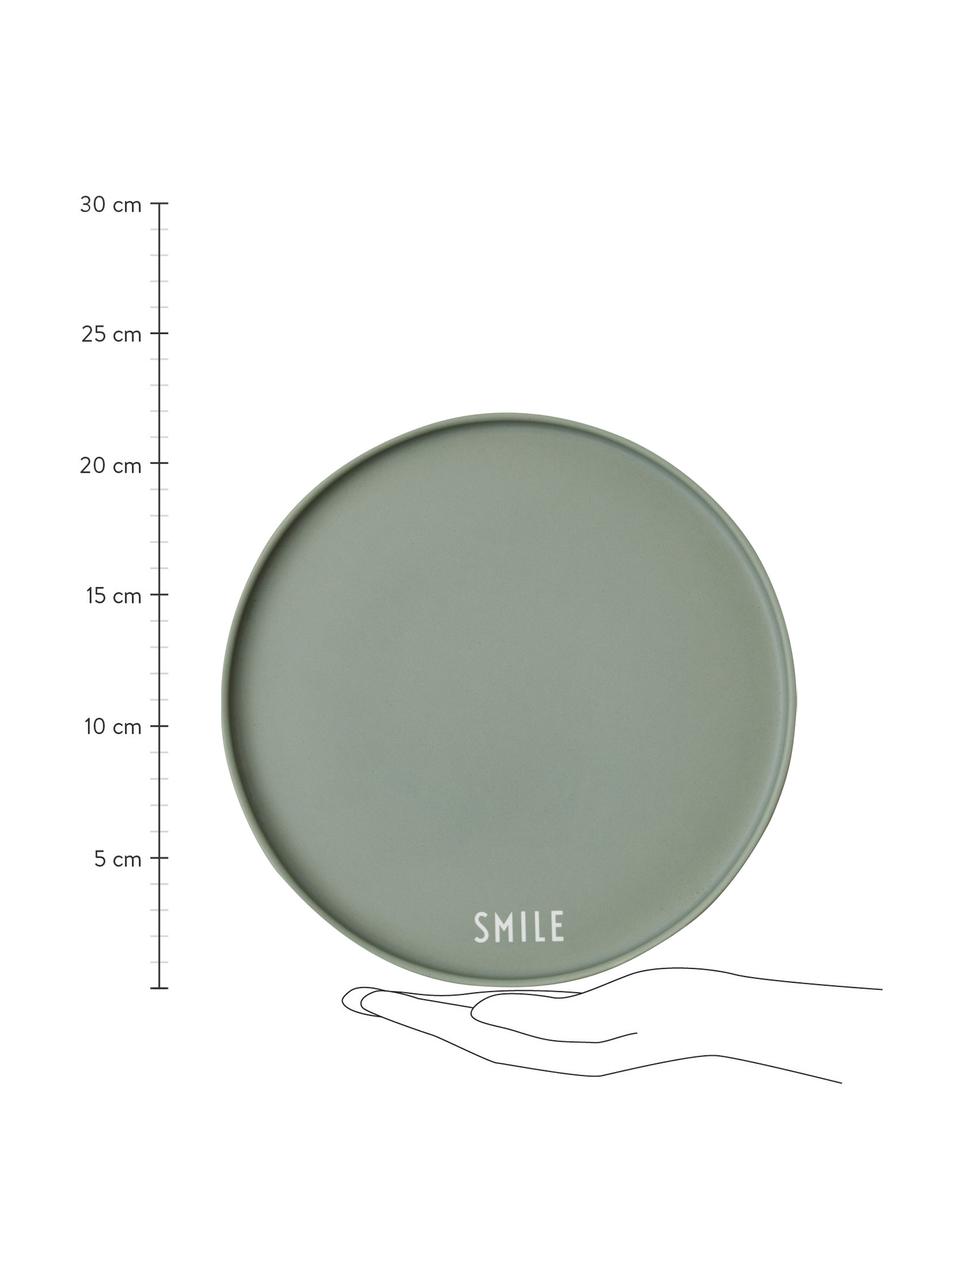 Design Teller Favourite SMILE in Grün mit Schriftzug, Fine Bone China (Porzellan)
Fine Bone China ist ein Weichporzellan, das sich besonders durch seinen strahlenden, durchscheinenden Glanz auszeichnet., Grün, Weiss, Ø 22 cm